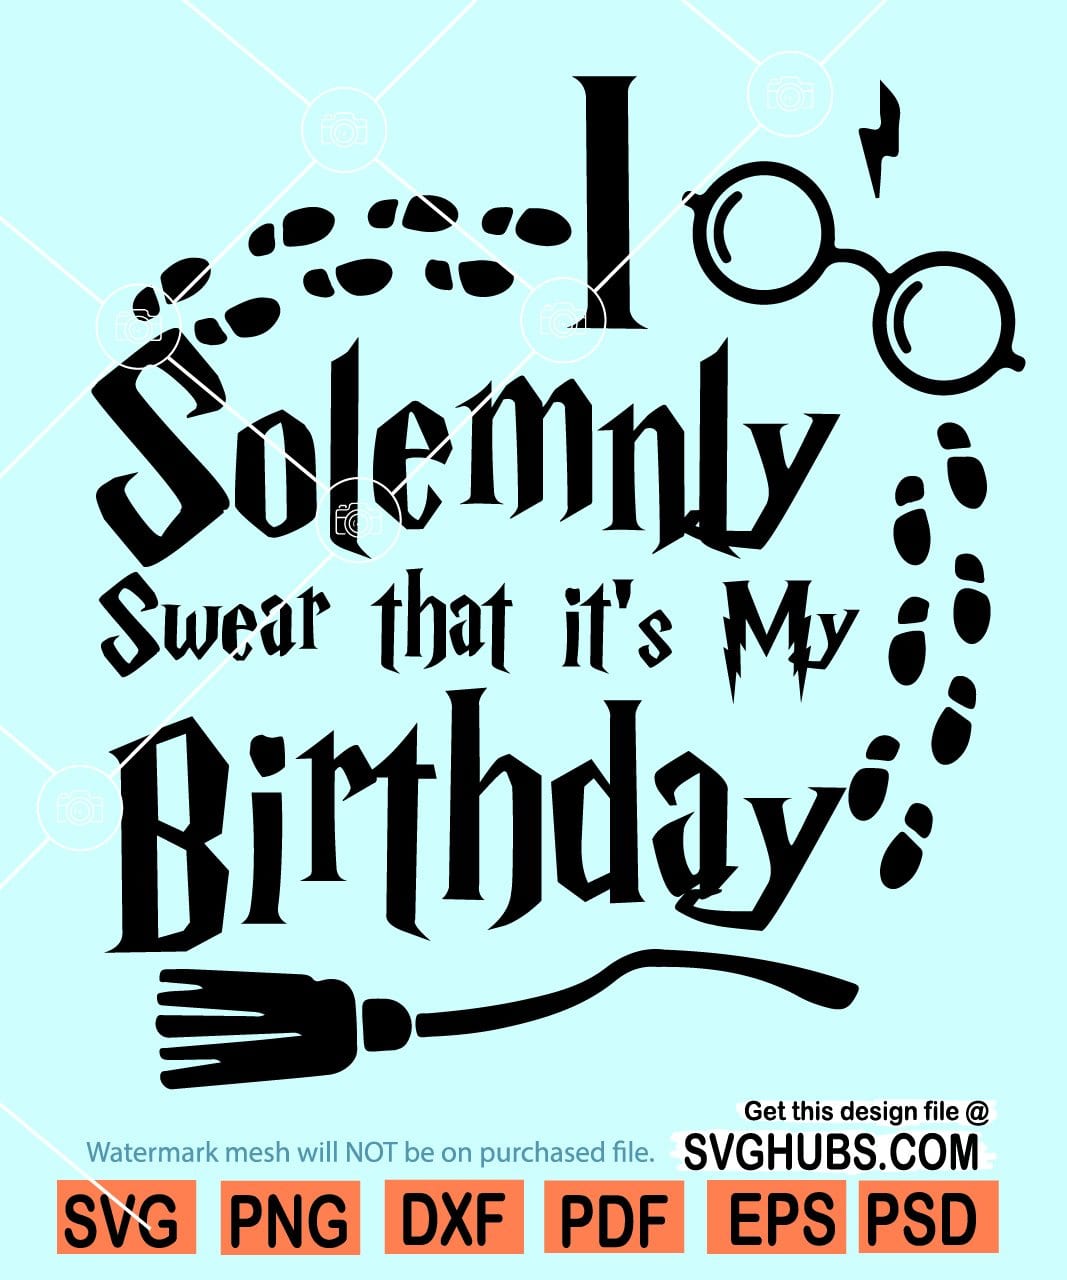 I solemnly swear that It's my birthday svg, Harry Potter birthday SVG